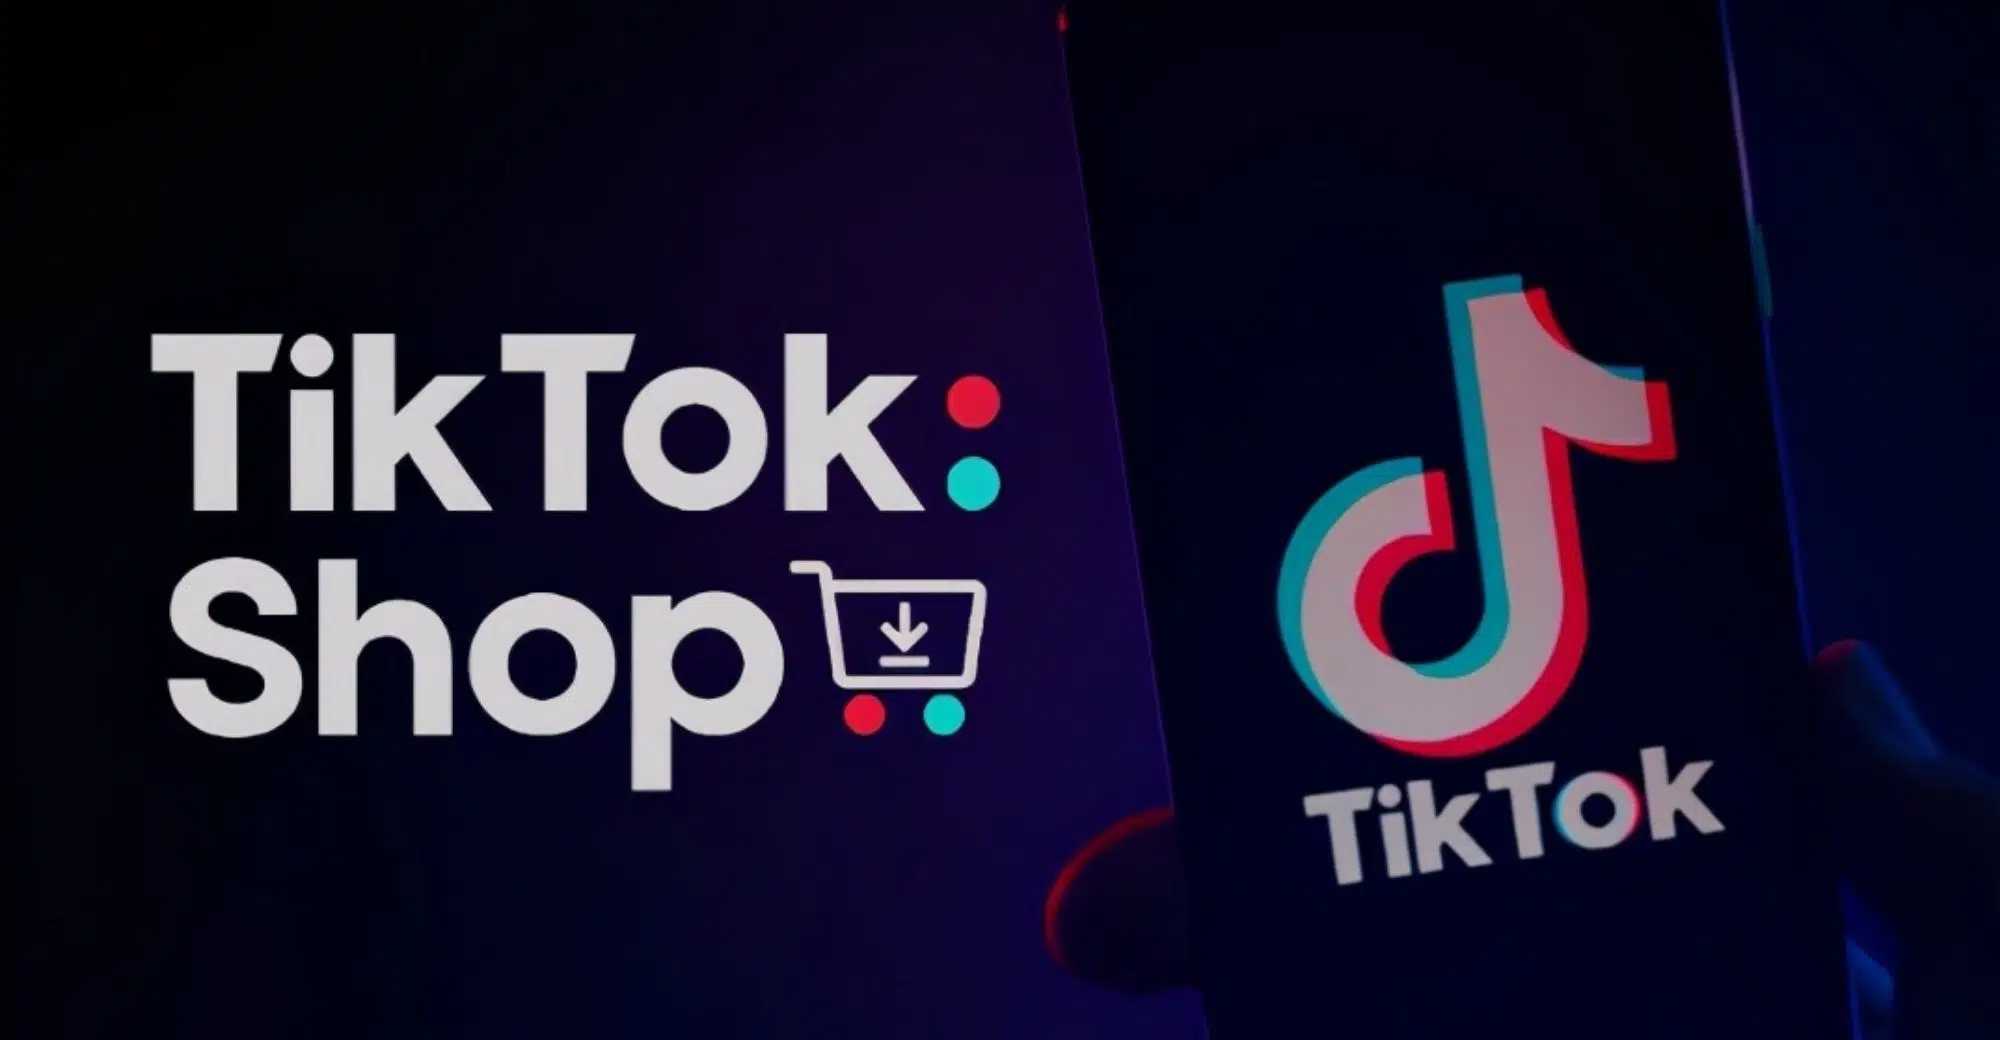 TikTok Shop - Androiditaly.com 20221004